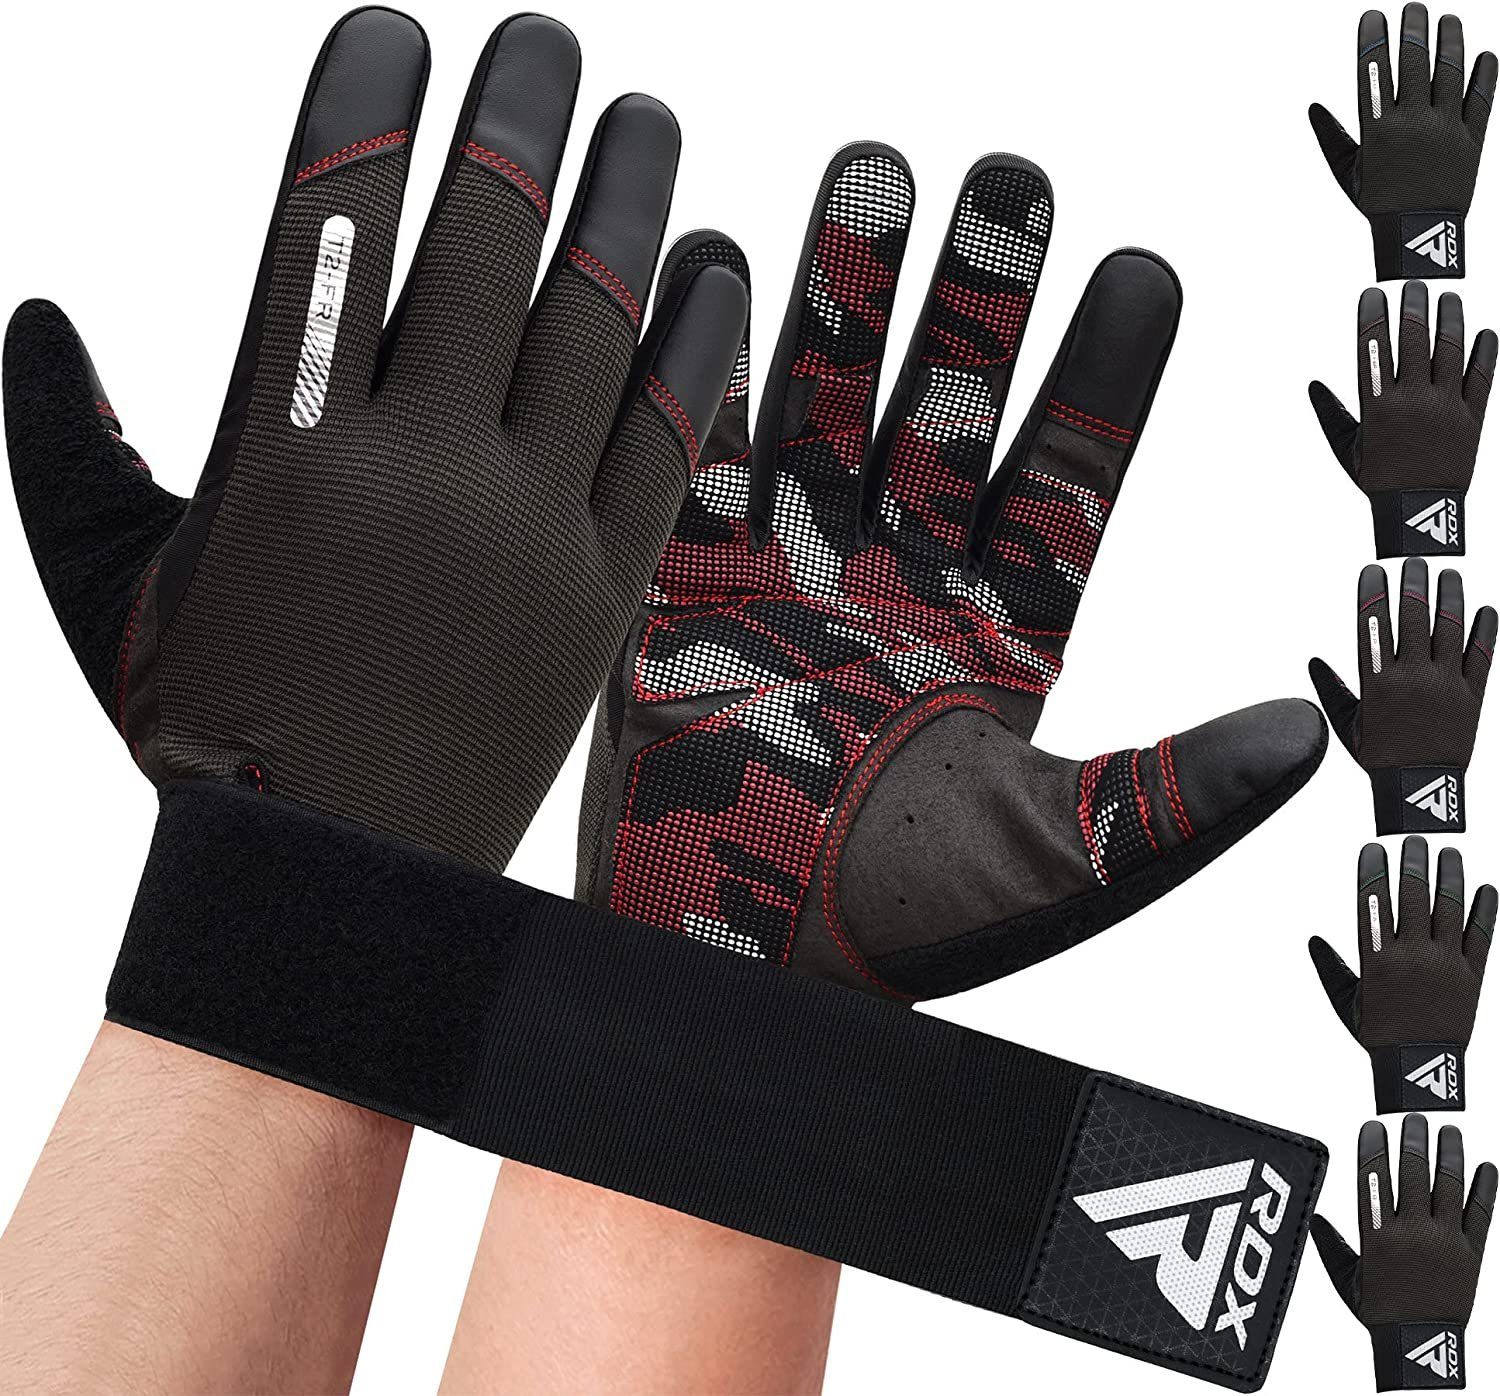 RDX Trainingshandschuhe RDX Fitness langen Touchscreen RED Frauen Handschuhe Finger voller Männer